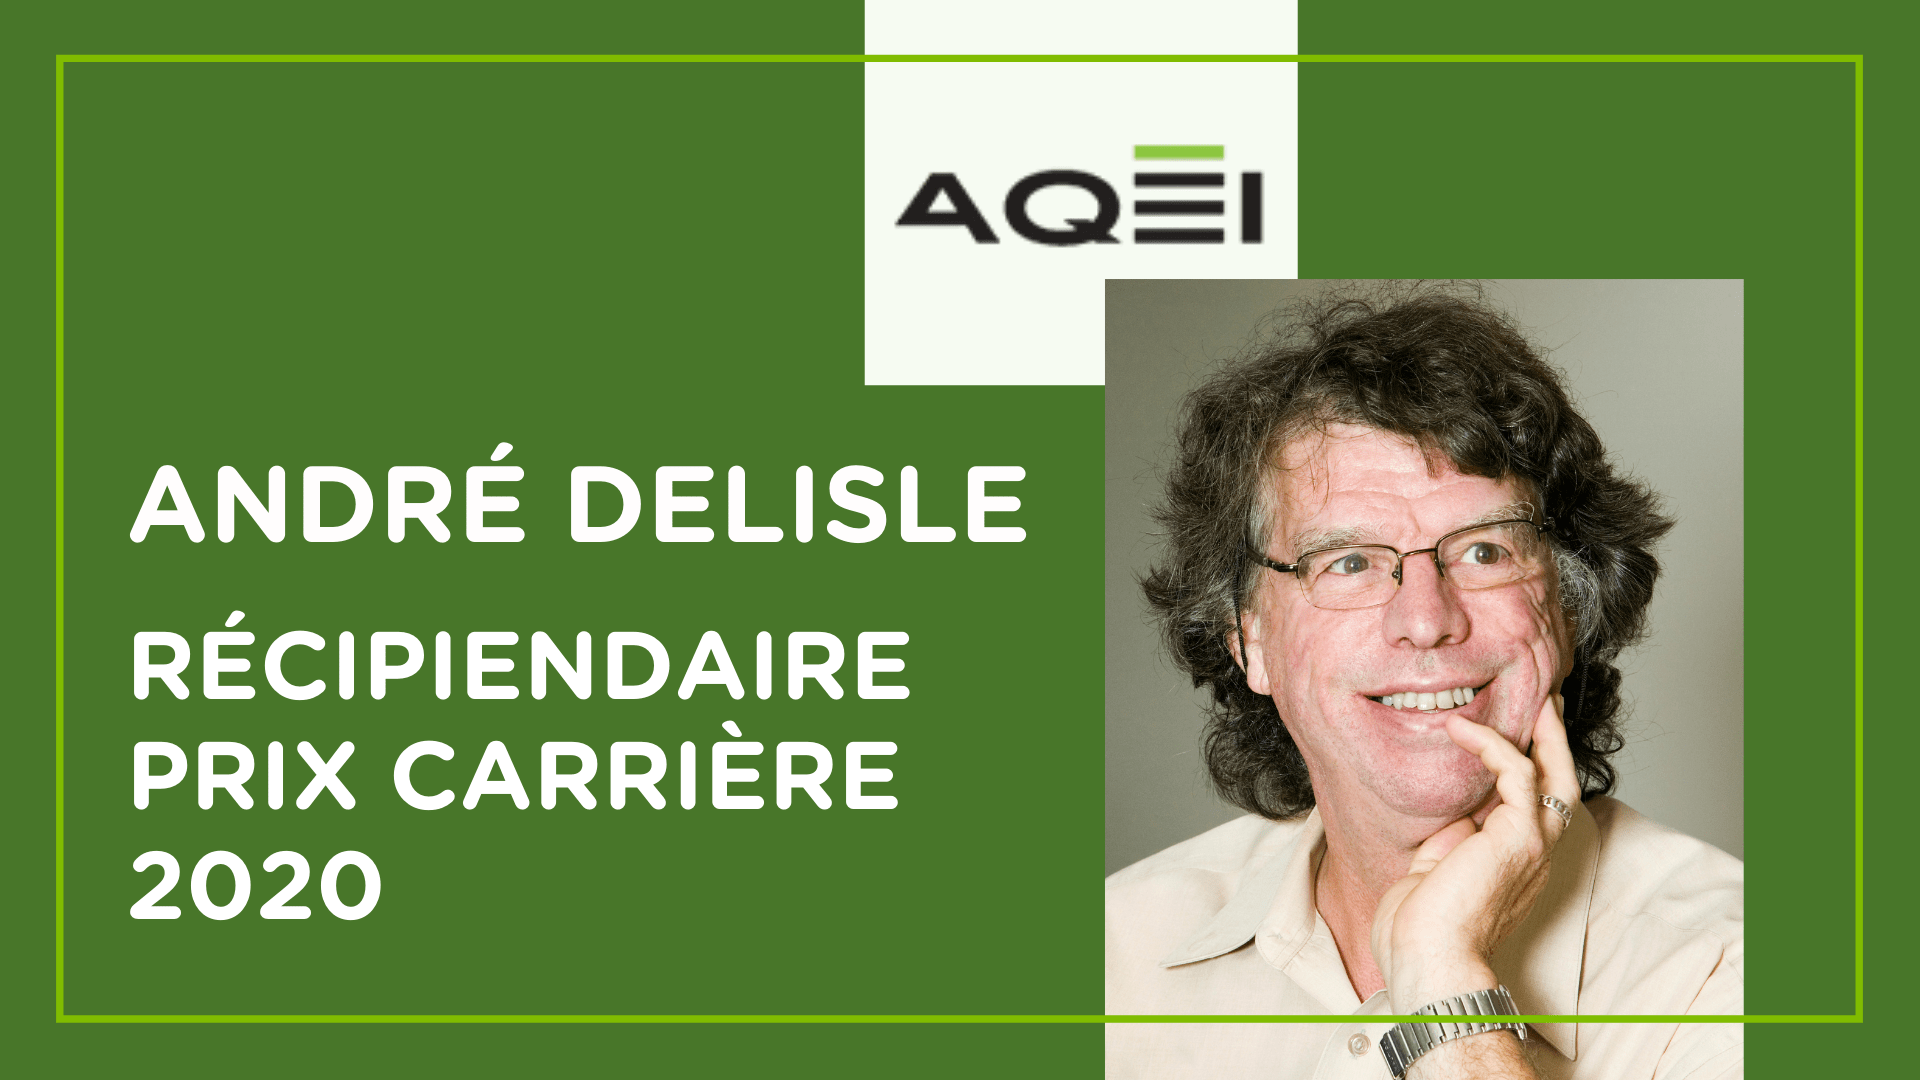 André Delisle, récipiendaire du prix carrière 2020 de l'AQÉI